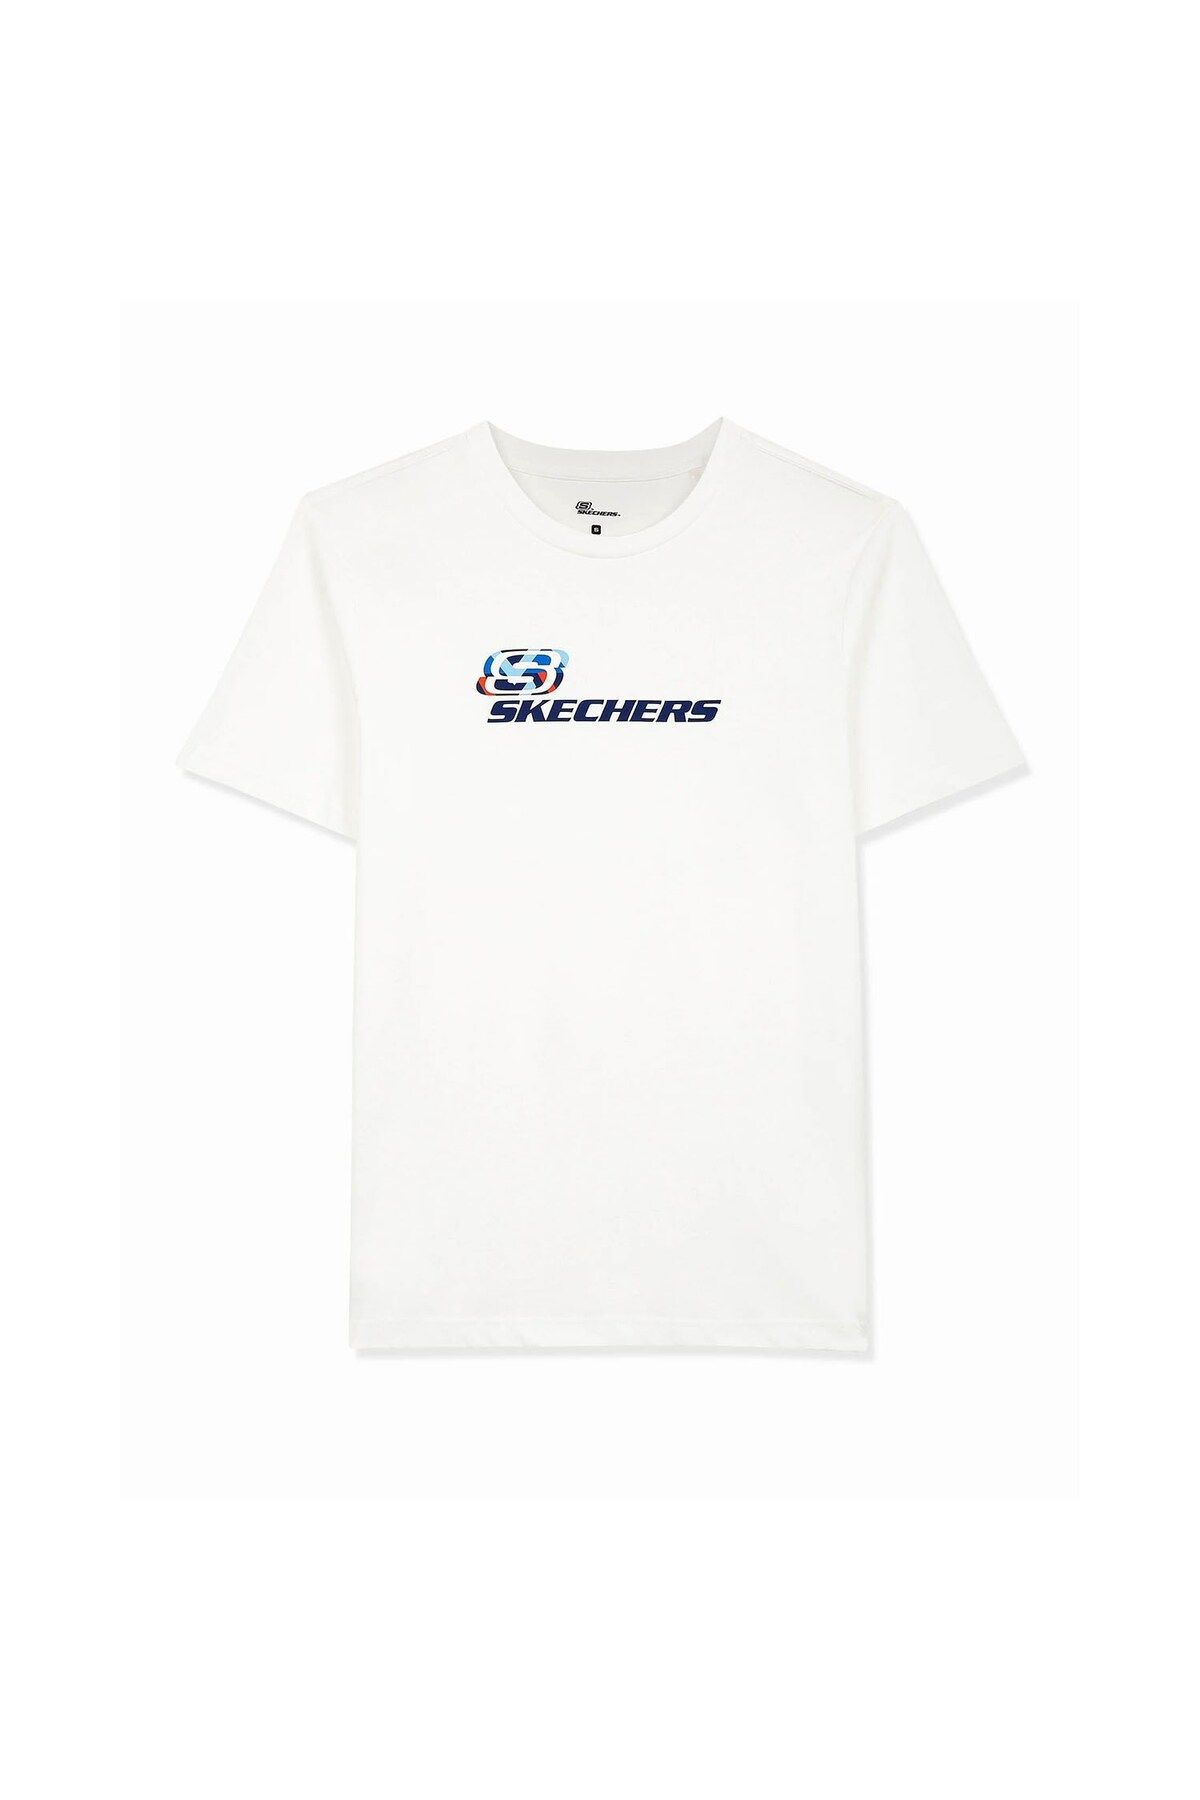 Skechers M Graphic Tee Crew Neck Erkek T-Shirt